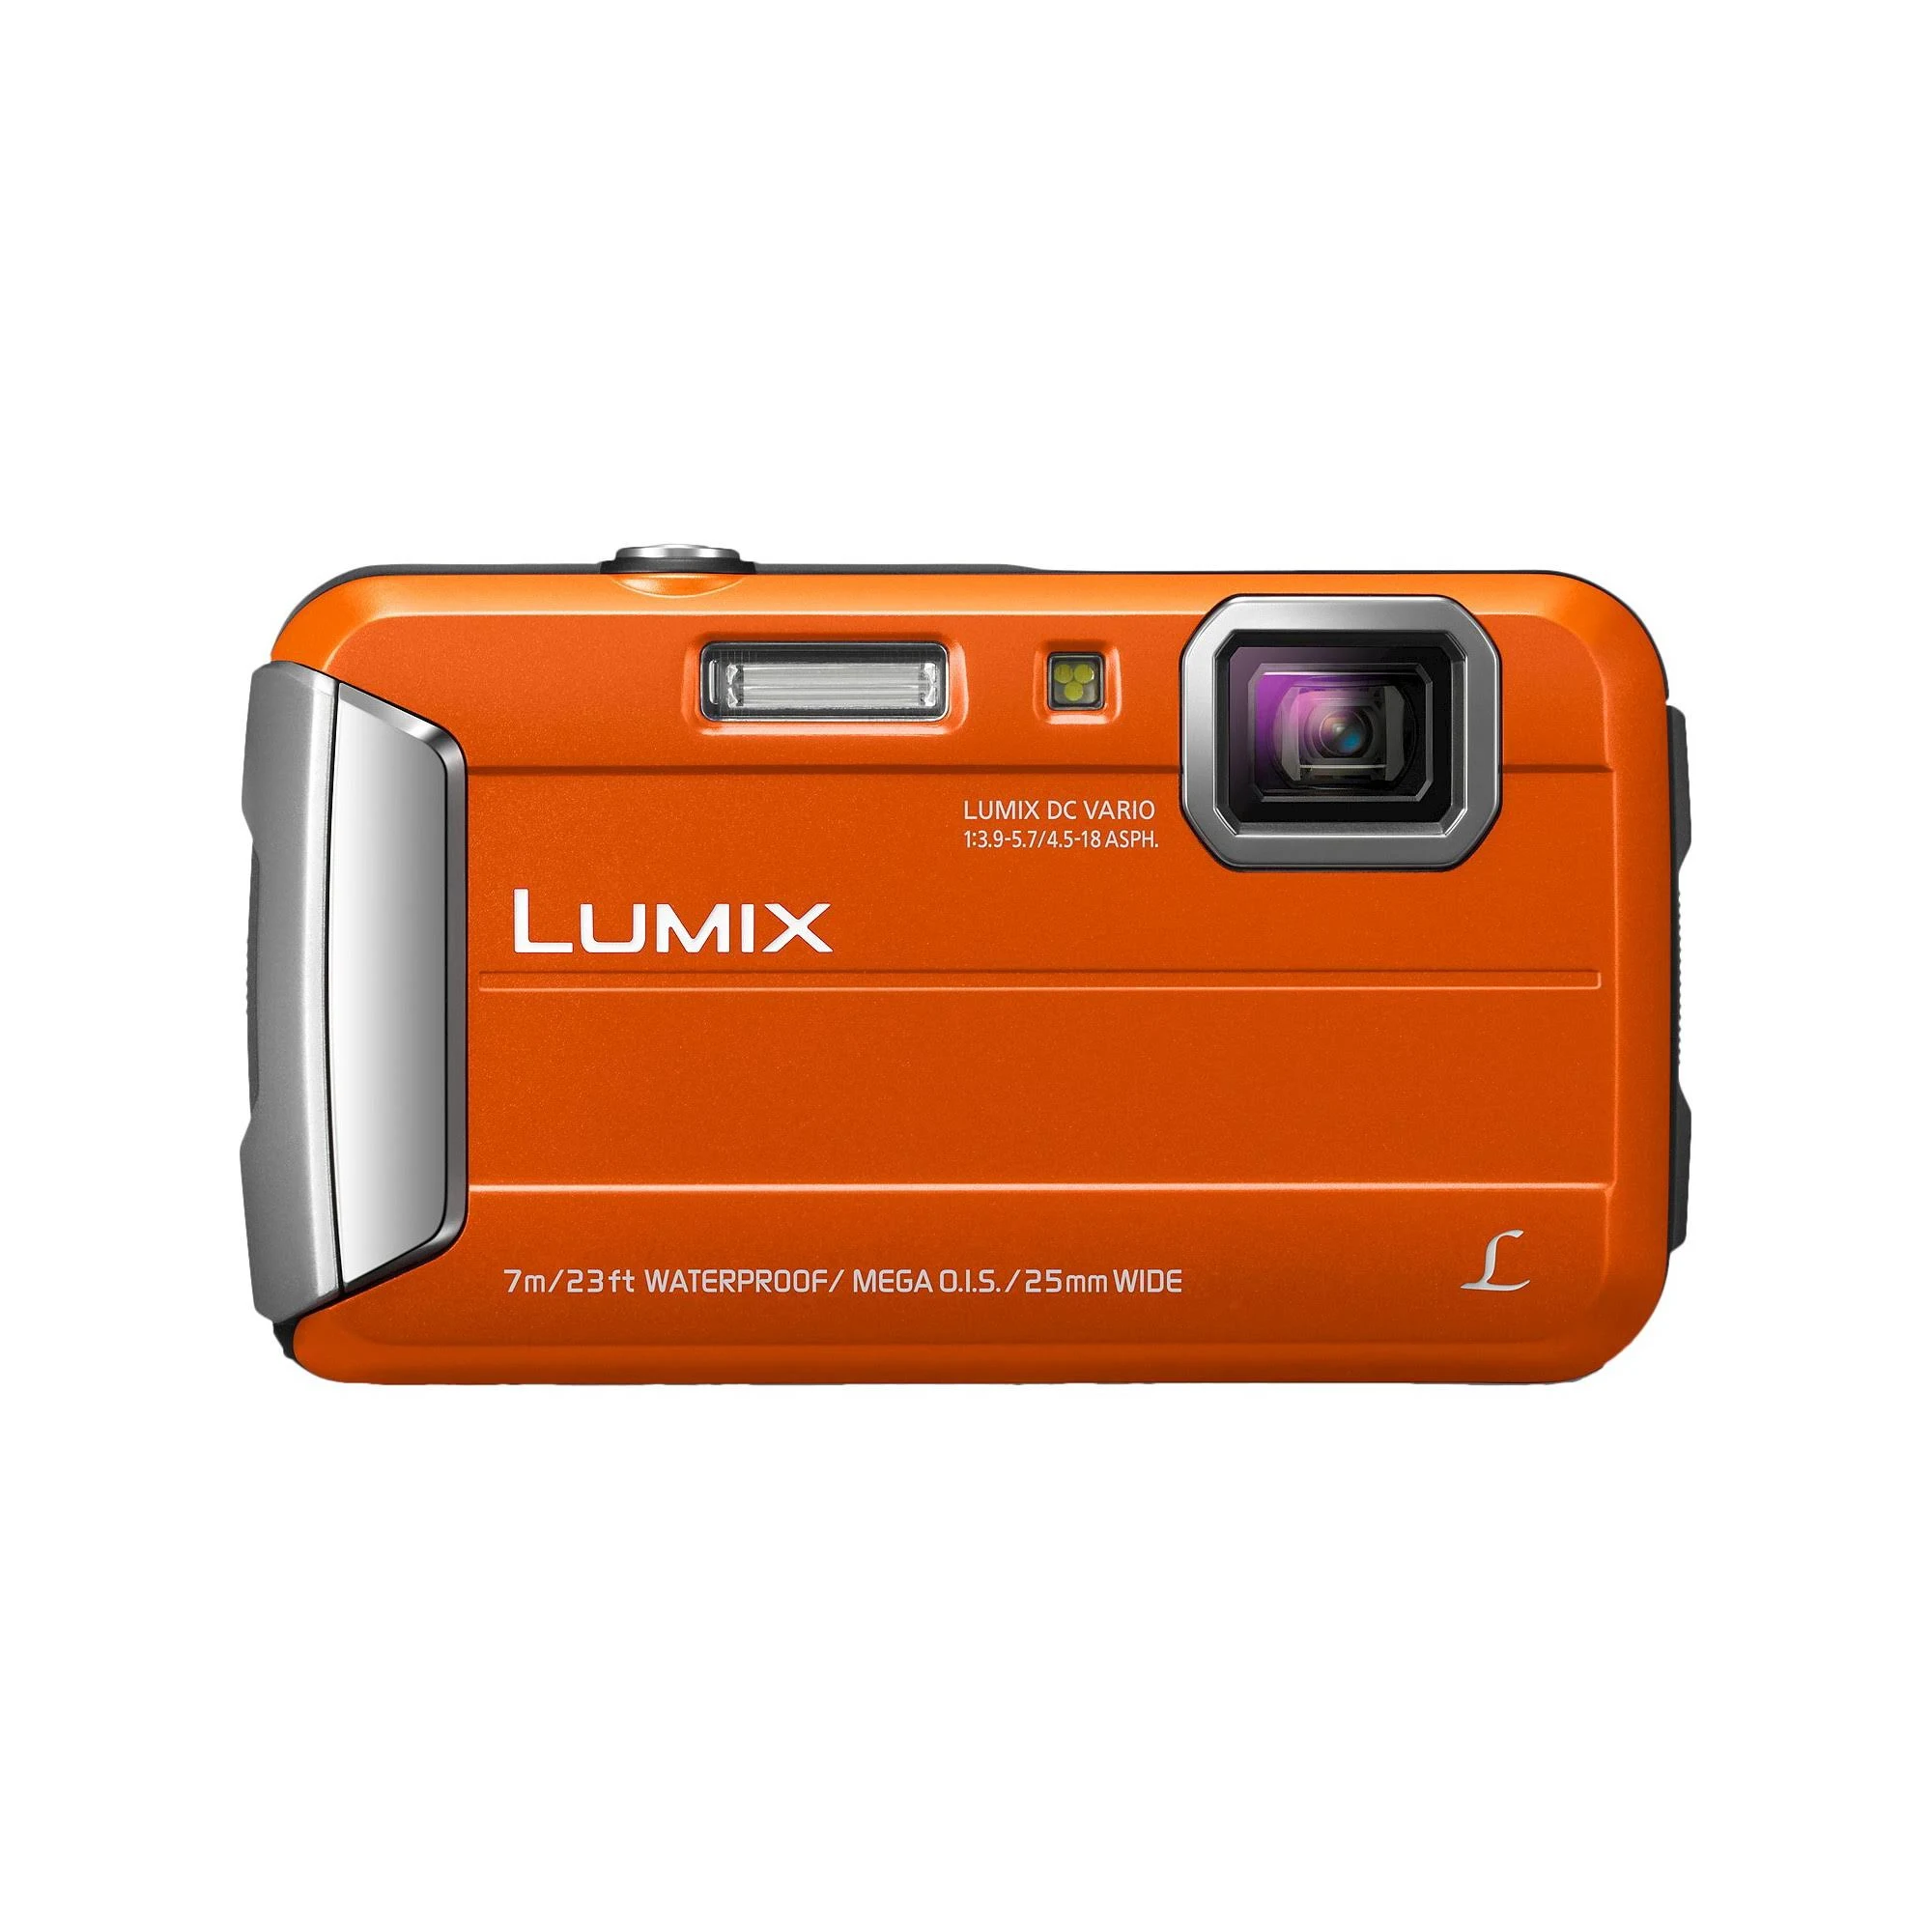 Panasonic Lumix TS25 16MP wasserdichte Digitalkamera mit 4x optischem Zoom